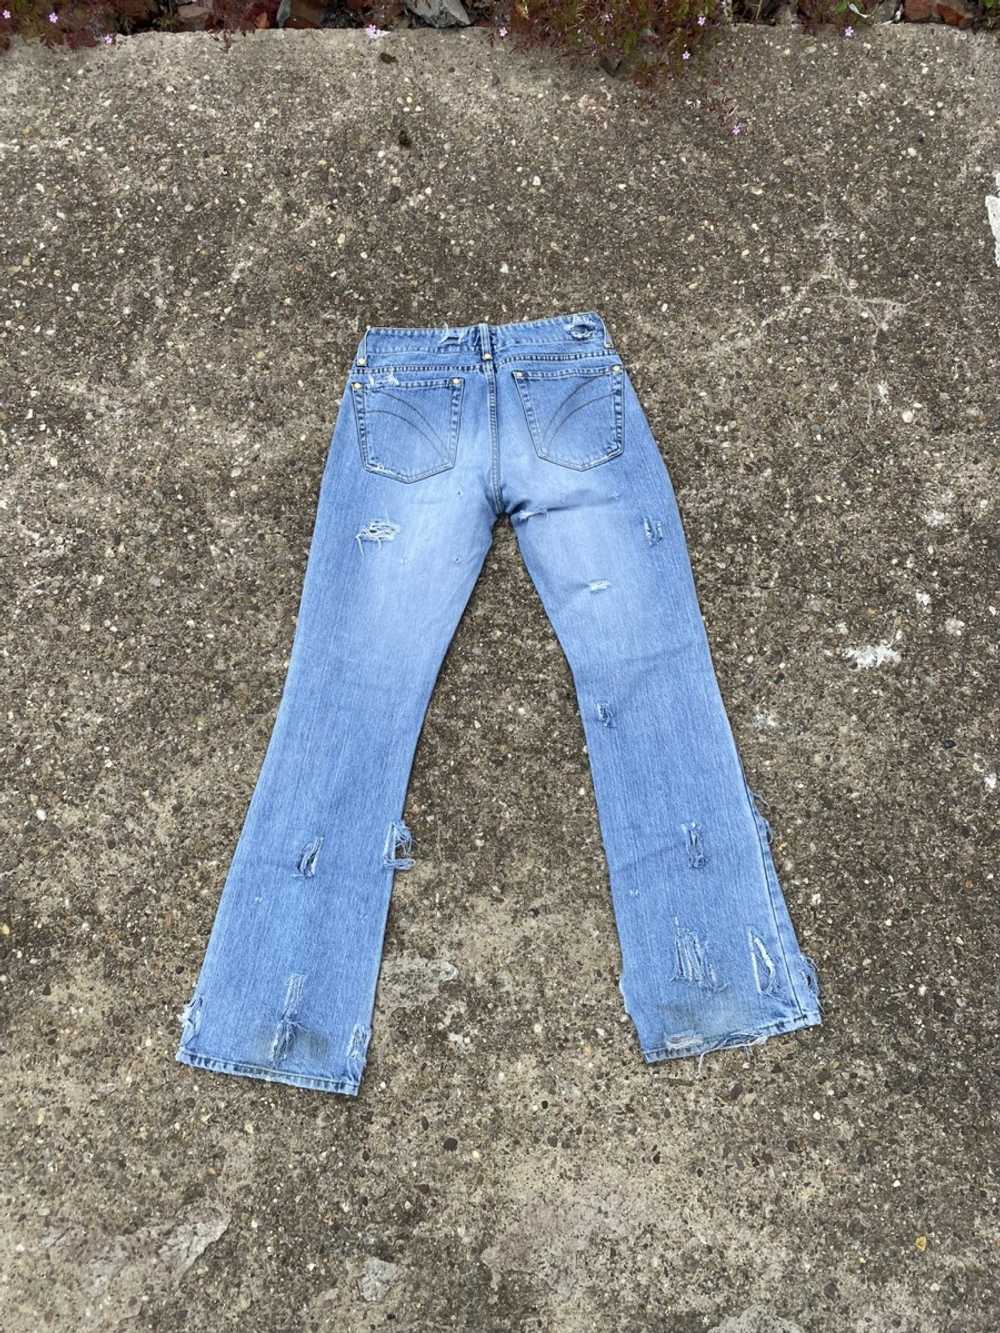 Vivienne Westwood RARE flared vintage denim jeans… - image 2